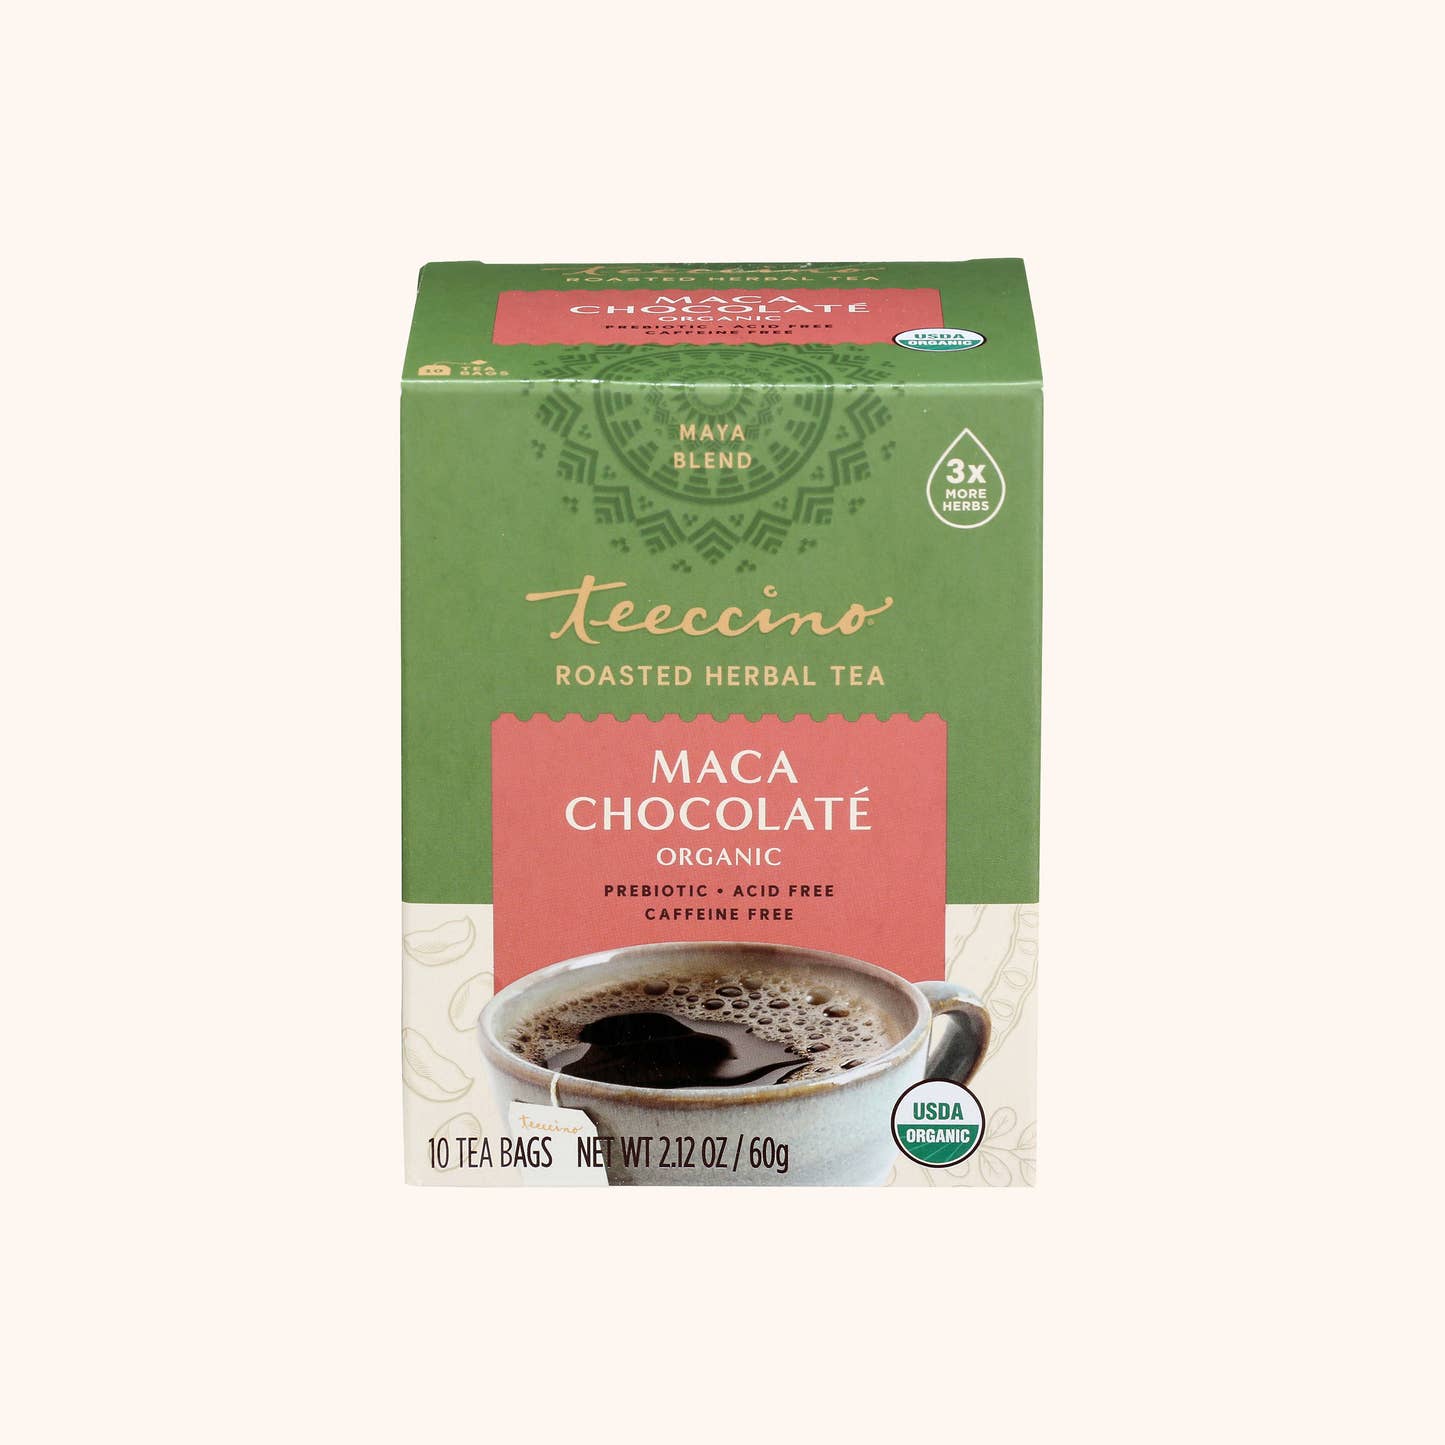 Maca Chocolaté Chicory Roasted Herbal Tea